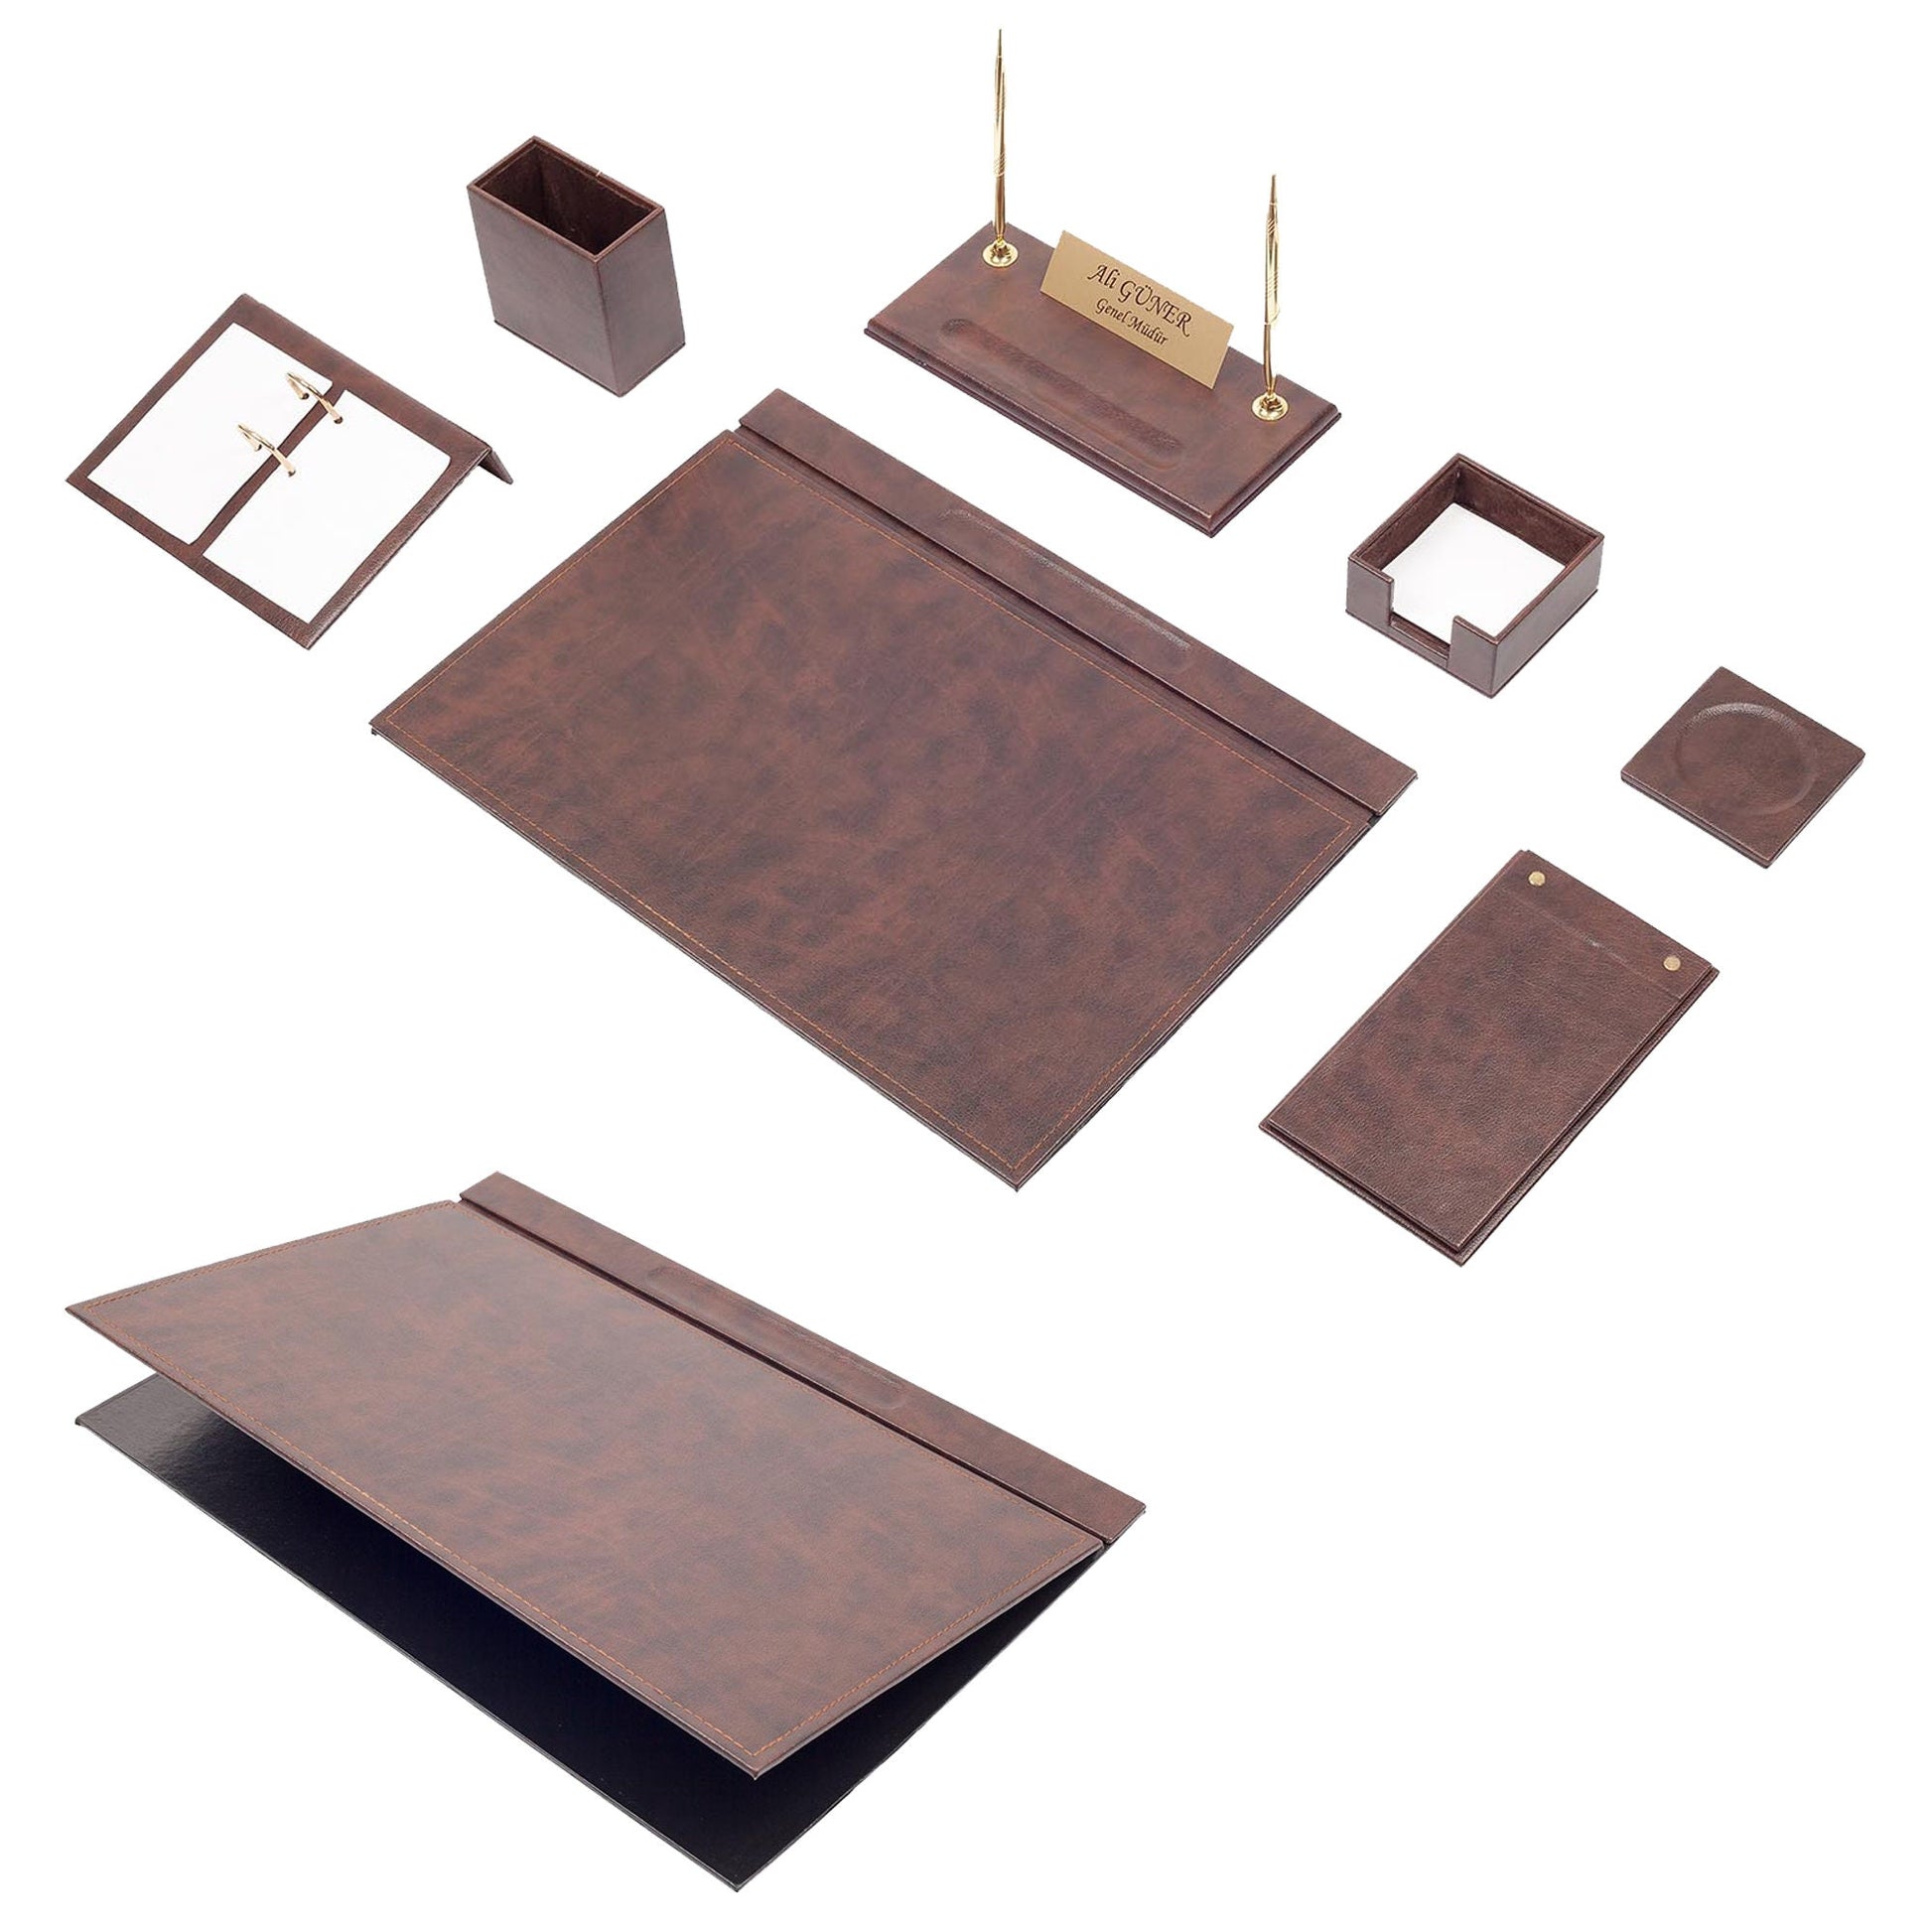 MOOGCO Desk Organizers - Desk Accessories - Leather Desk Organizer - Bonded Leather Set - Office Desk Accessories - Home Office Accessories - Desk